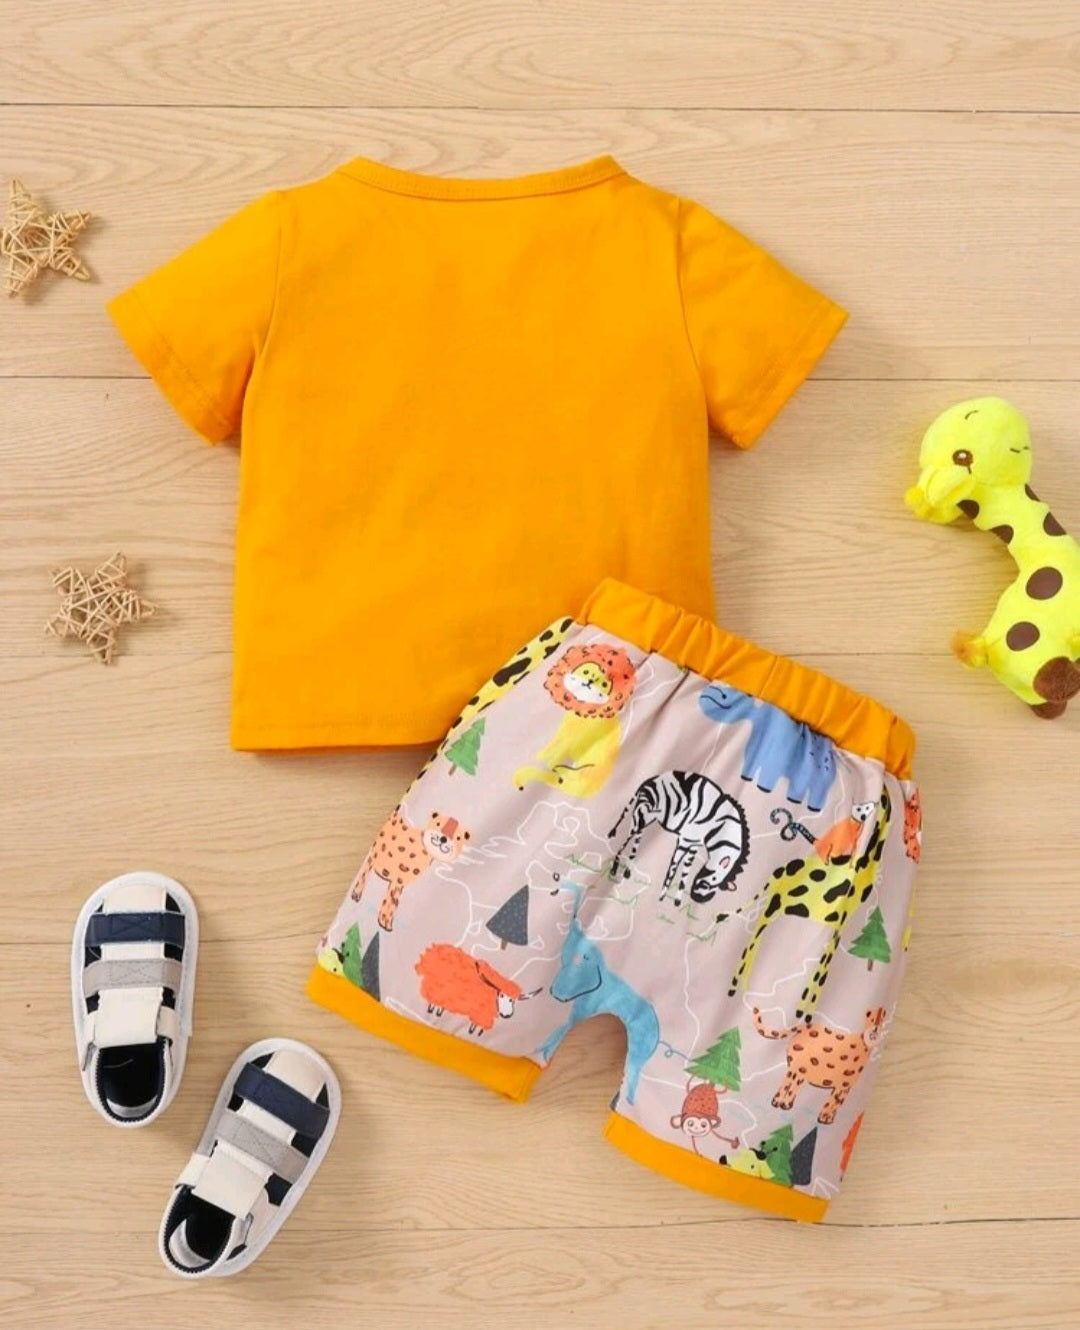 Mama's Boy T-shirt and Zoo Printed Shorts